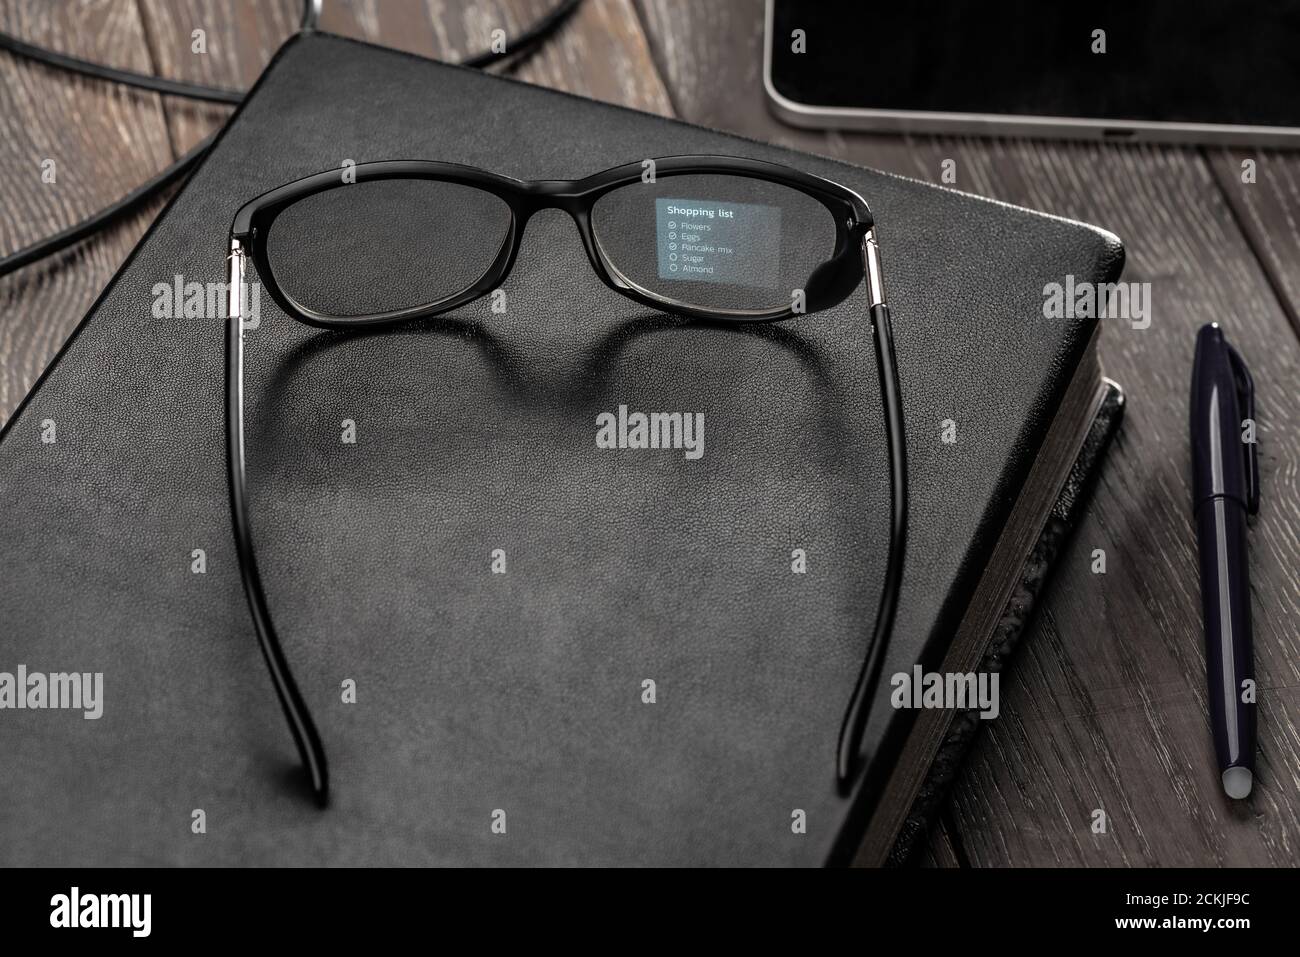 Occhiali intelligenti che mostrano una lista della spesa sul suo obiettivo Foto Stock